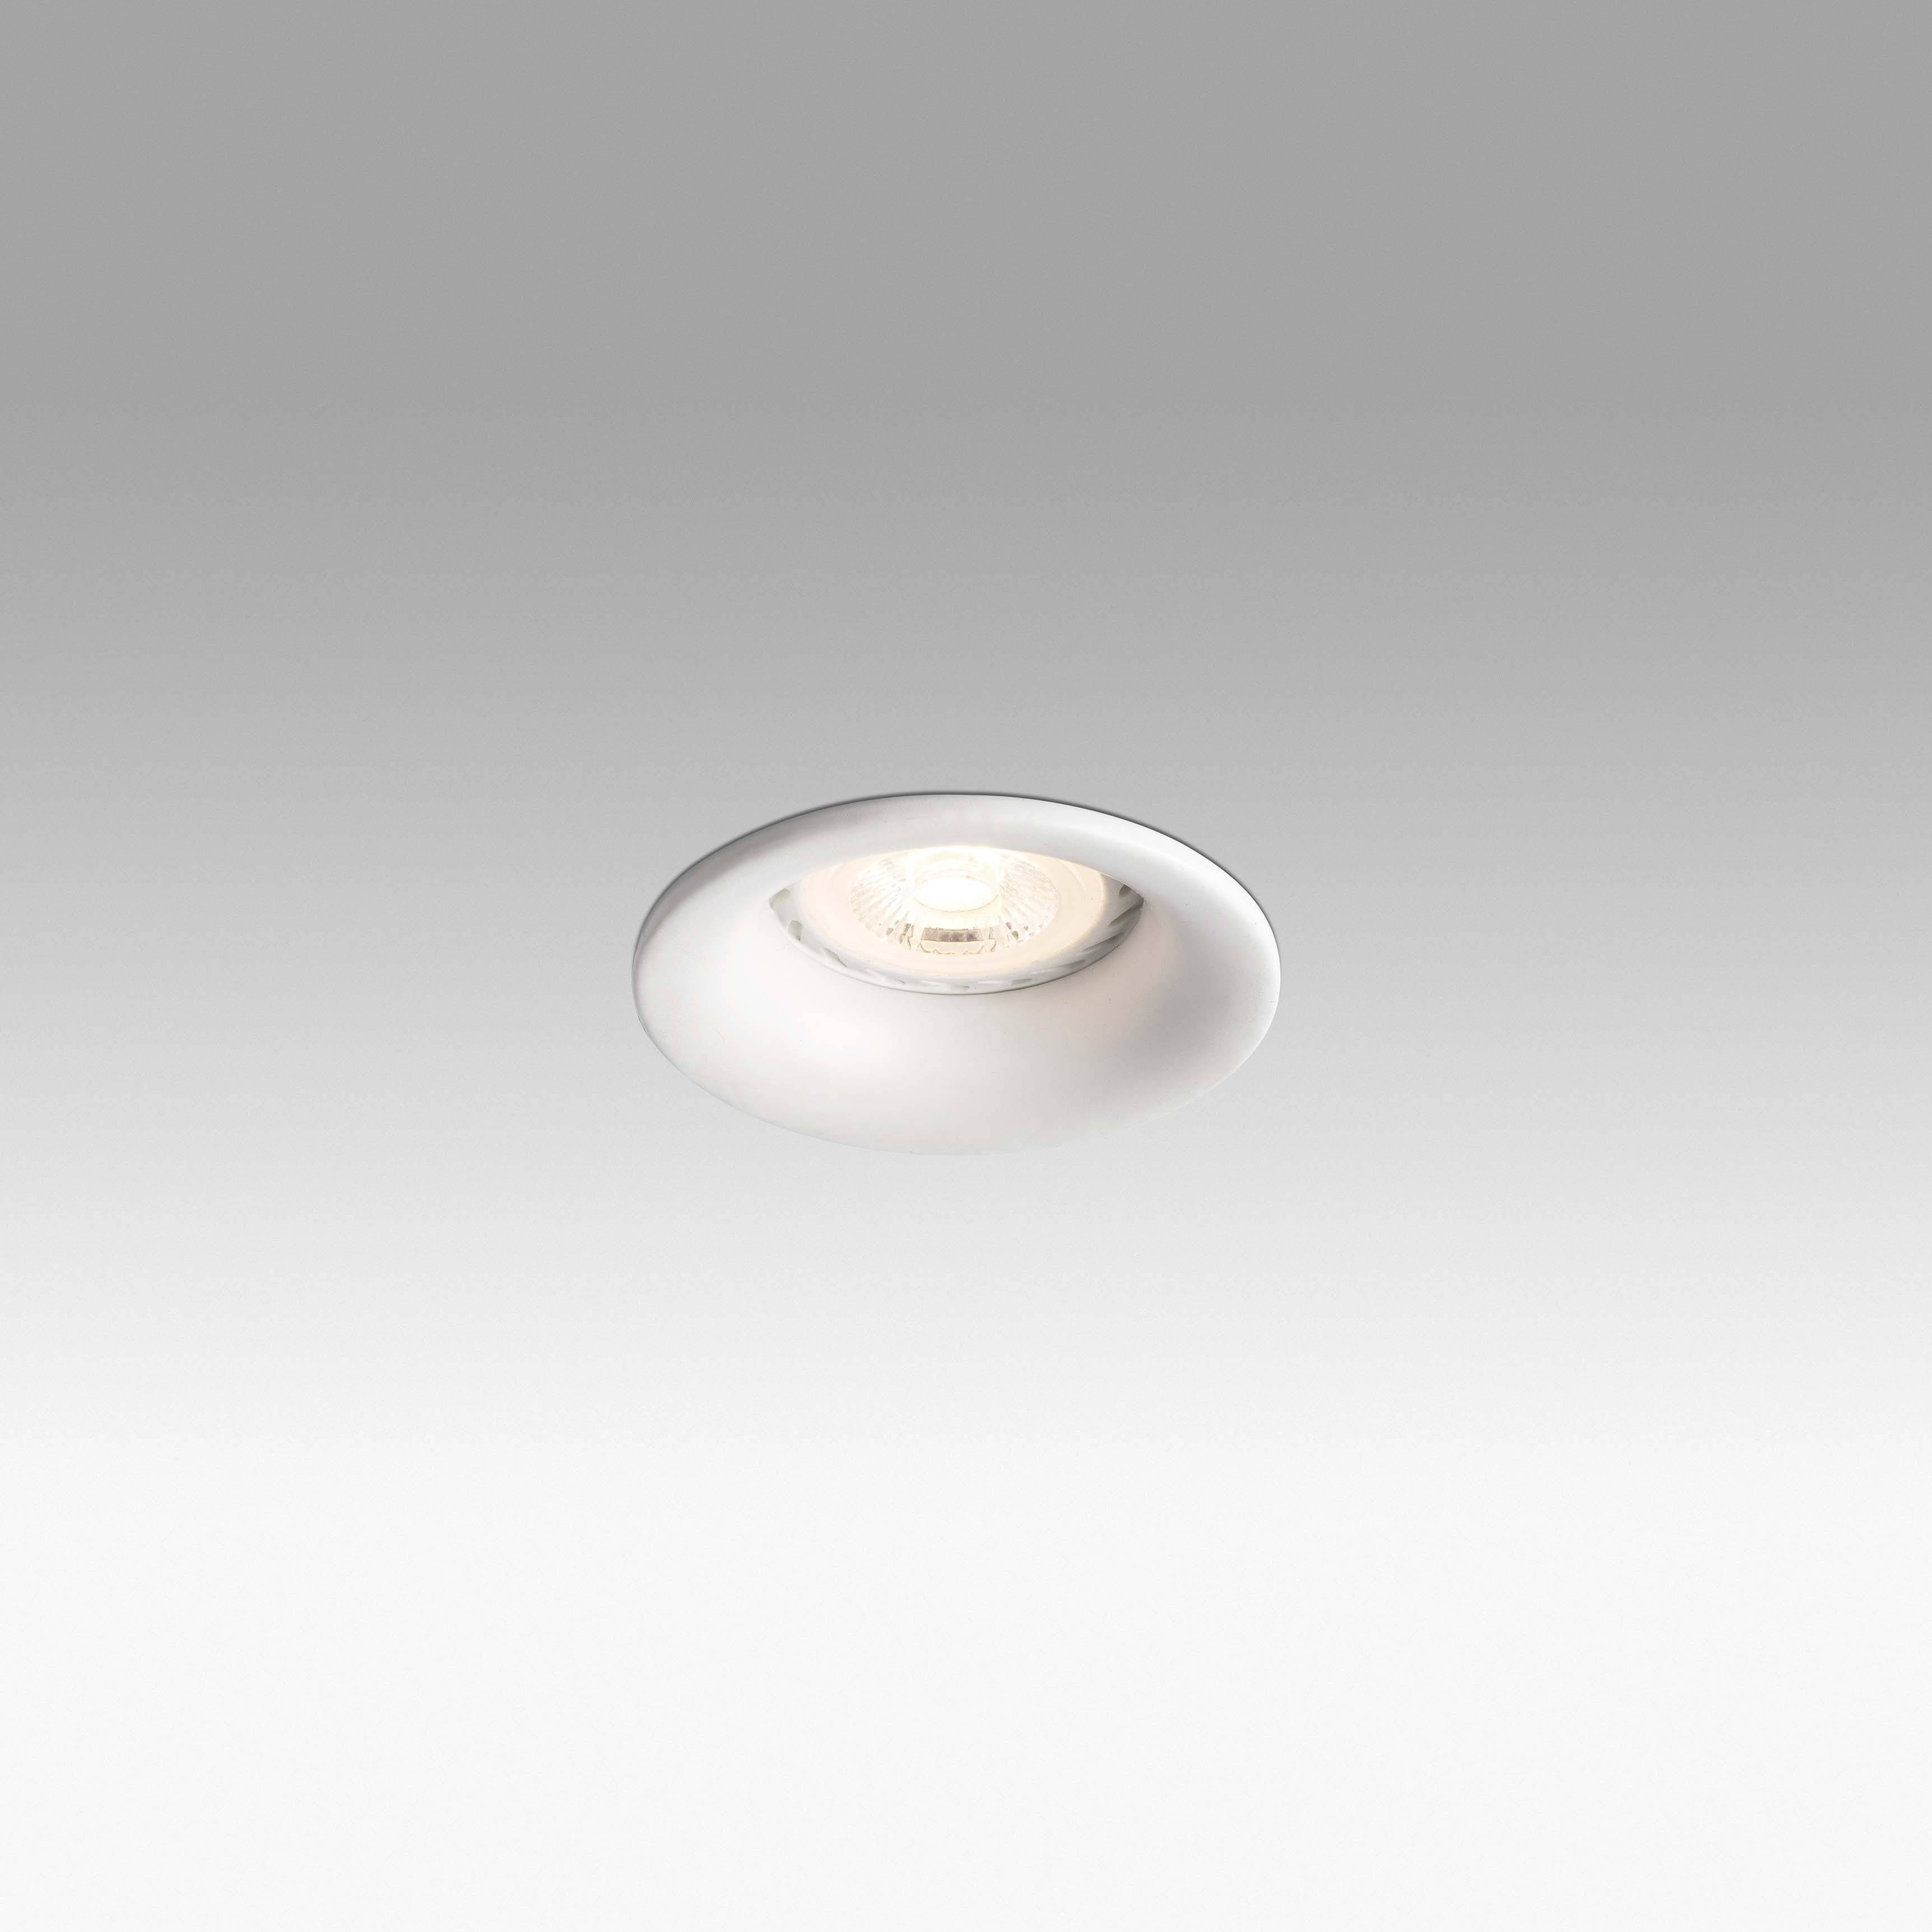 Ne 1 Light Round Recessed Spotlight White GU10 - image 1